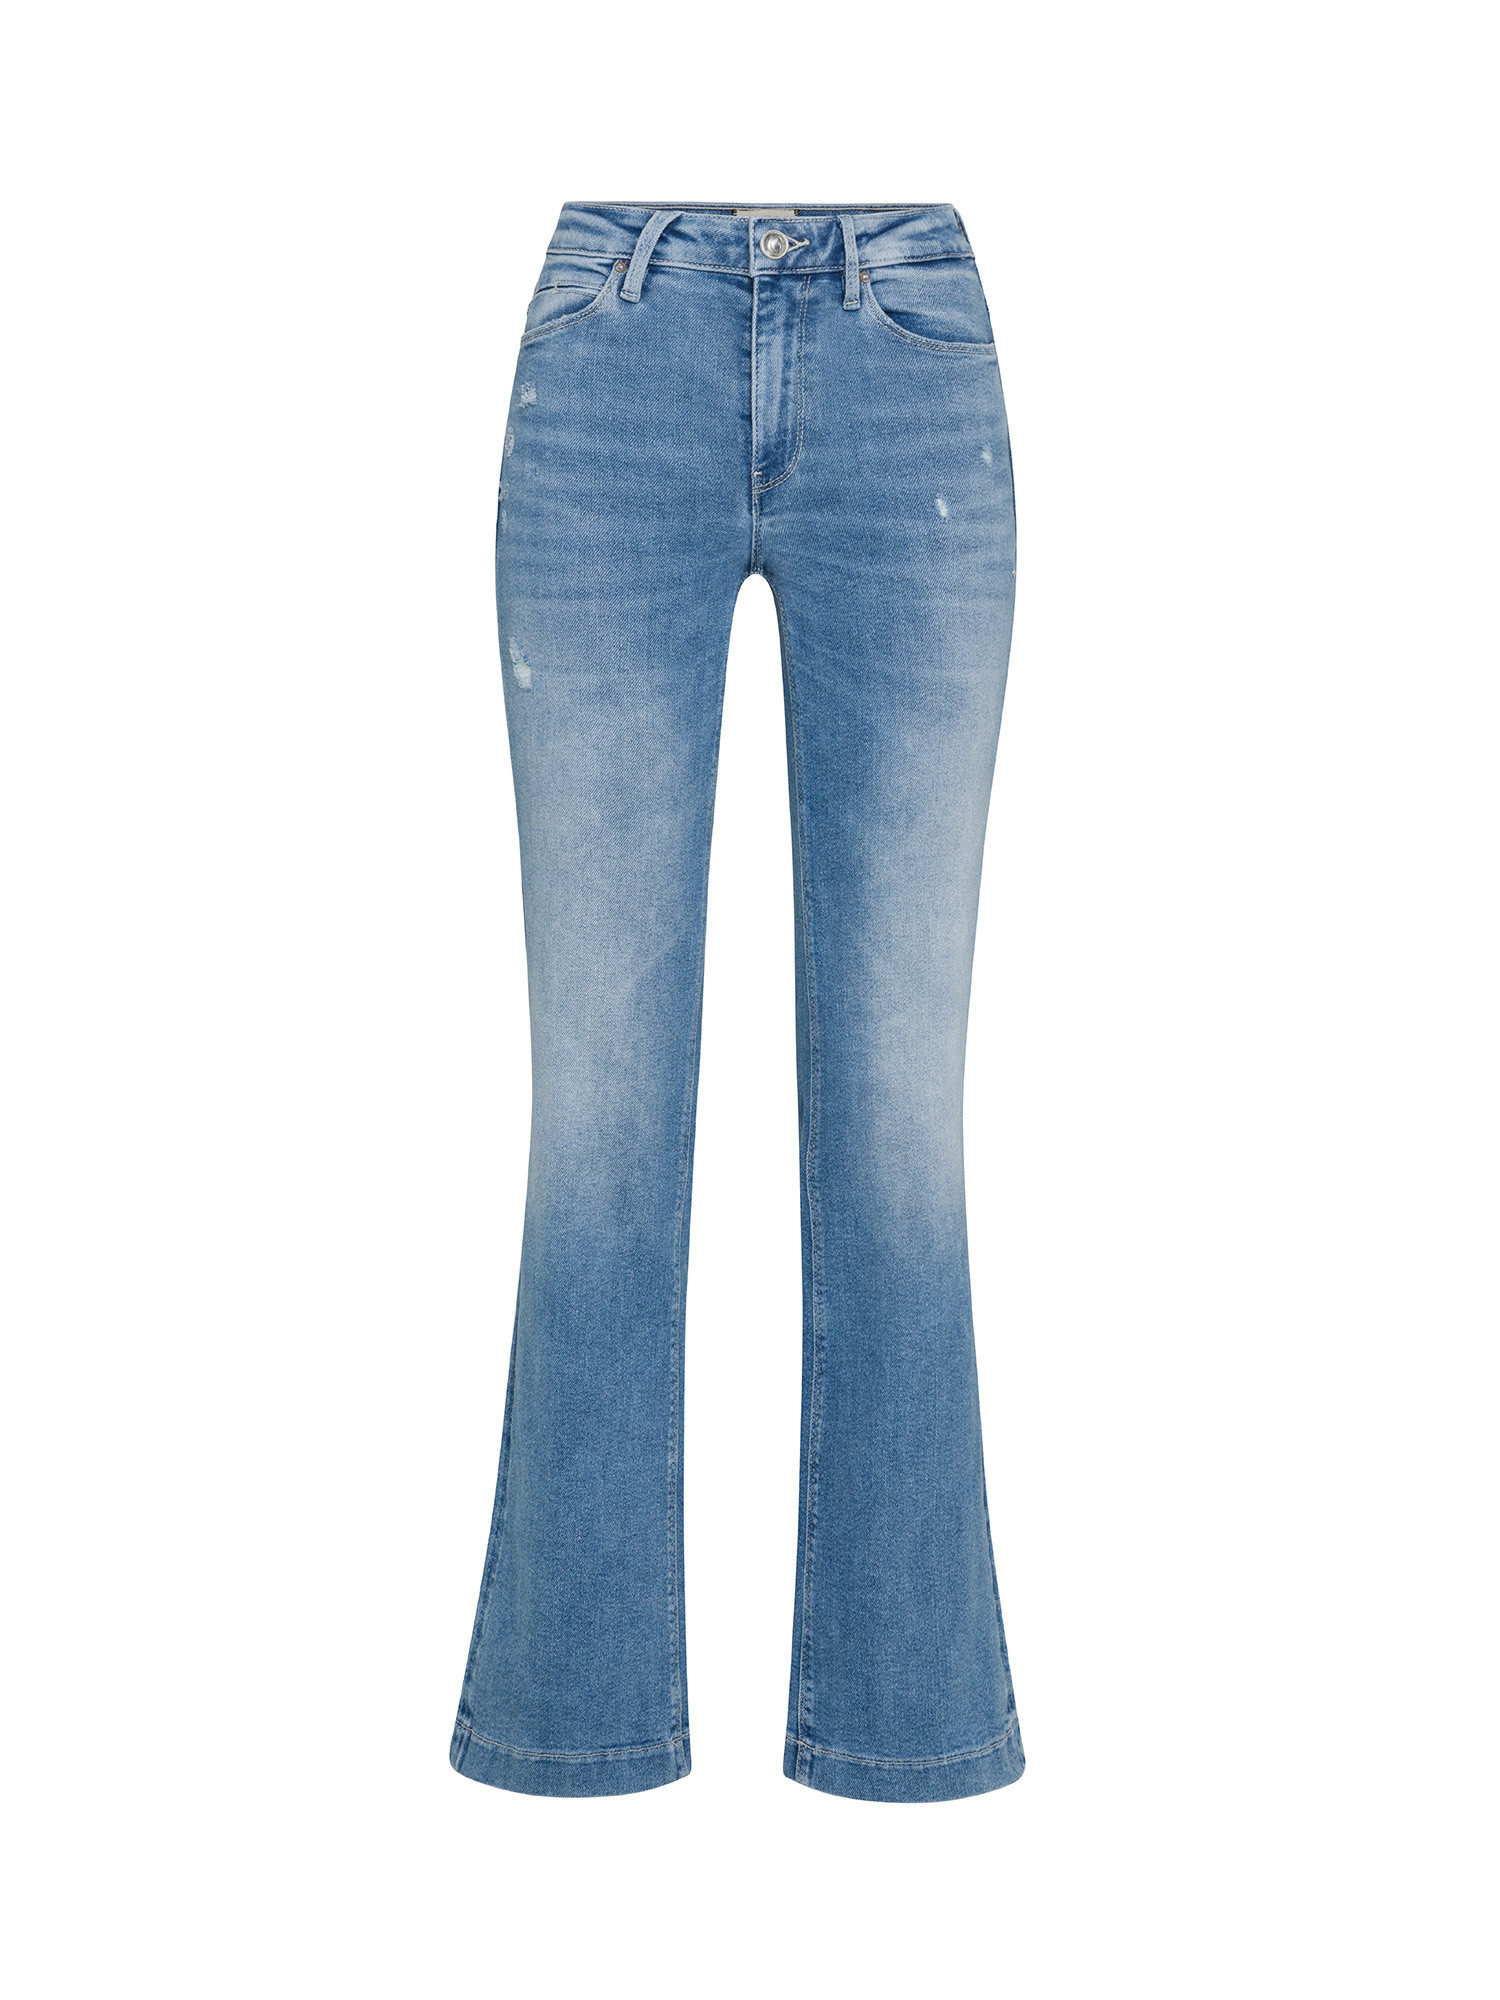 Guess - 5-pocket bootcut jeans, Denim, large image number 0